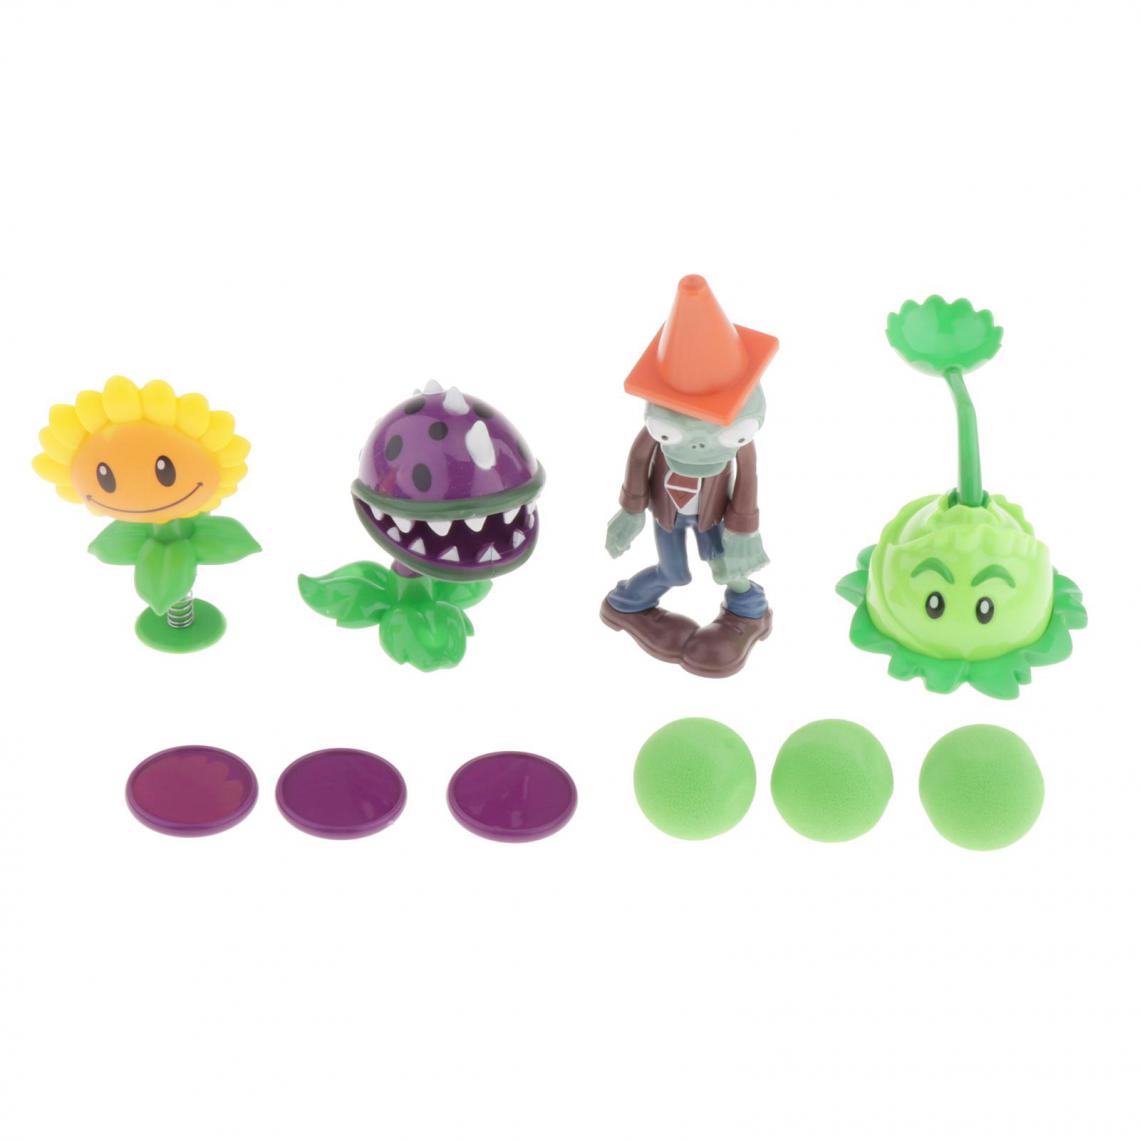 marque generique - Modèle De Figurine D'action Plants Vs Zombies Pour Enfants Style1 - Jeux éducatifs